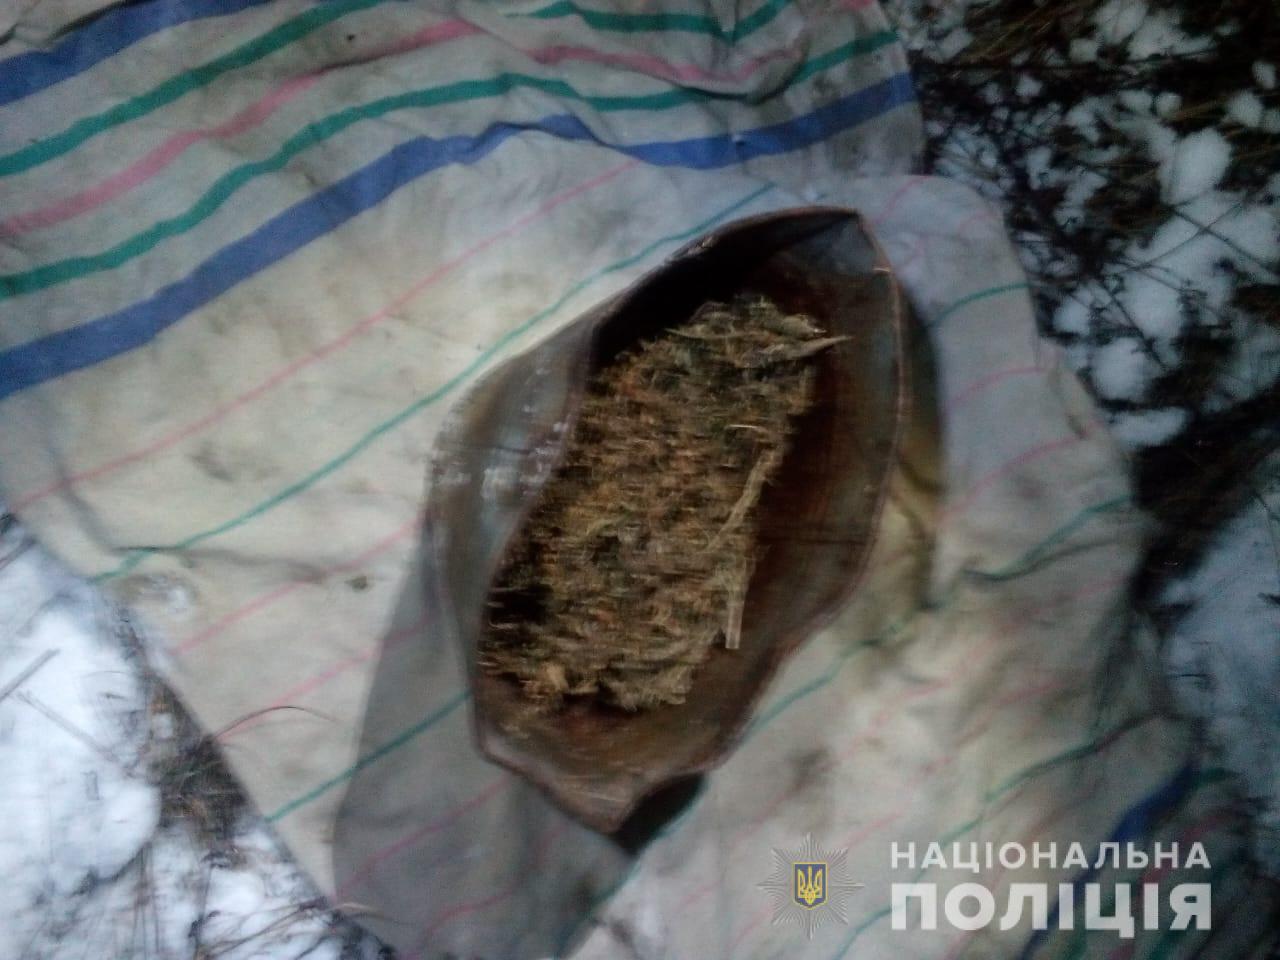 Суміш, схожа на марихуану, вилучена за місцем проживання 37-річного мешканця села Ворочево.